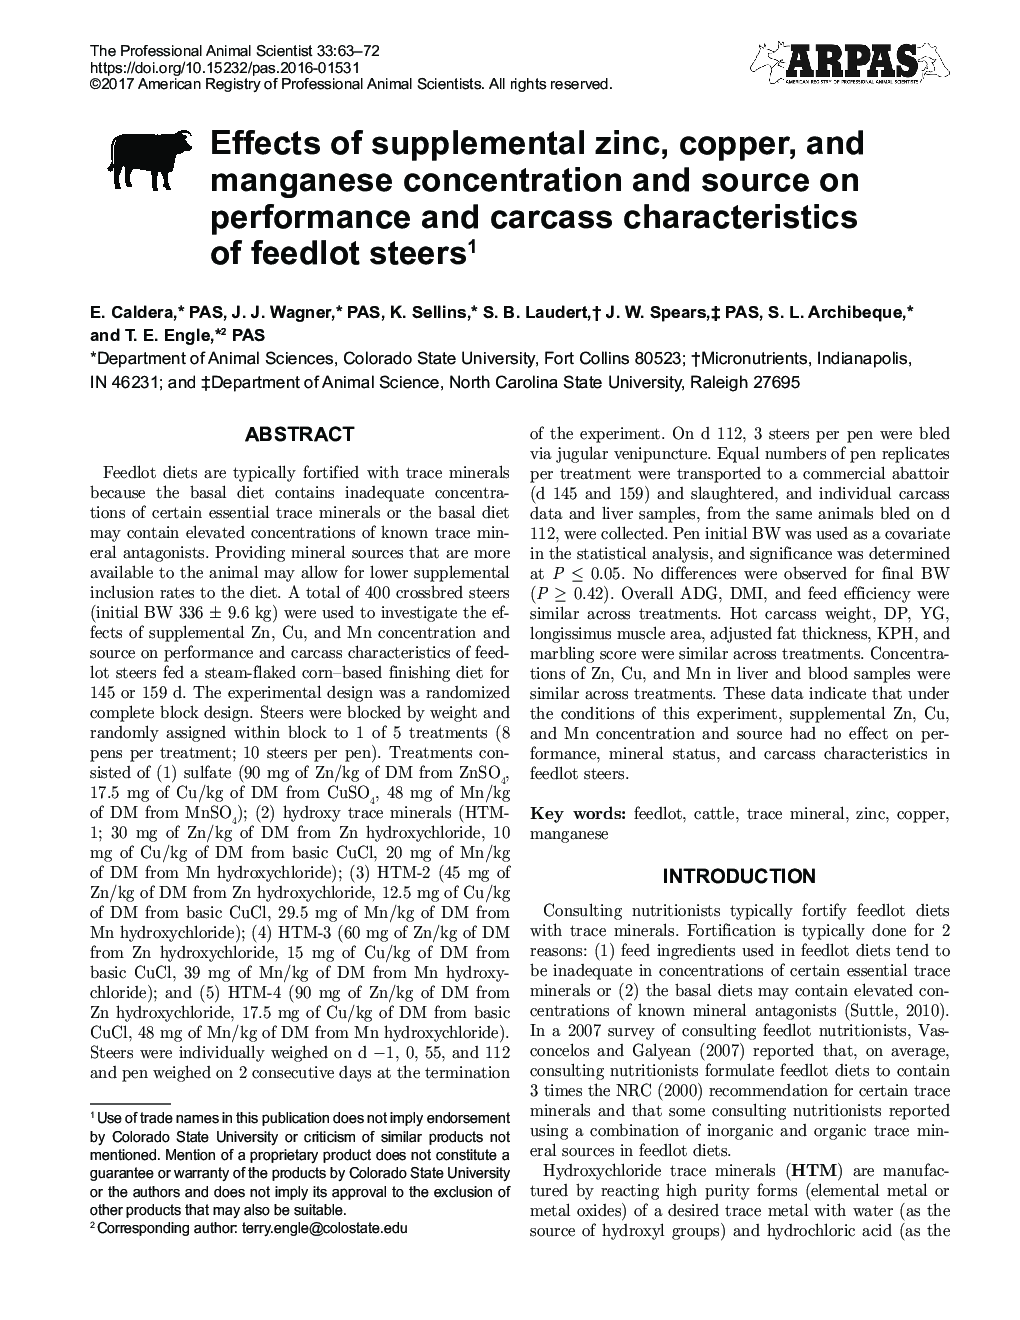 اثر متقابل غلظت روی، مس و منگنز و منبع بر عملکرد و خصوصیات لاشه مورچه های خوراکی 1 